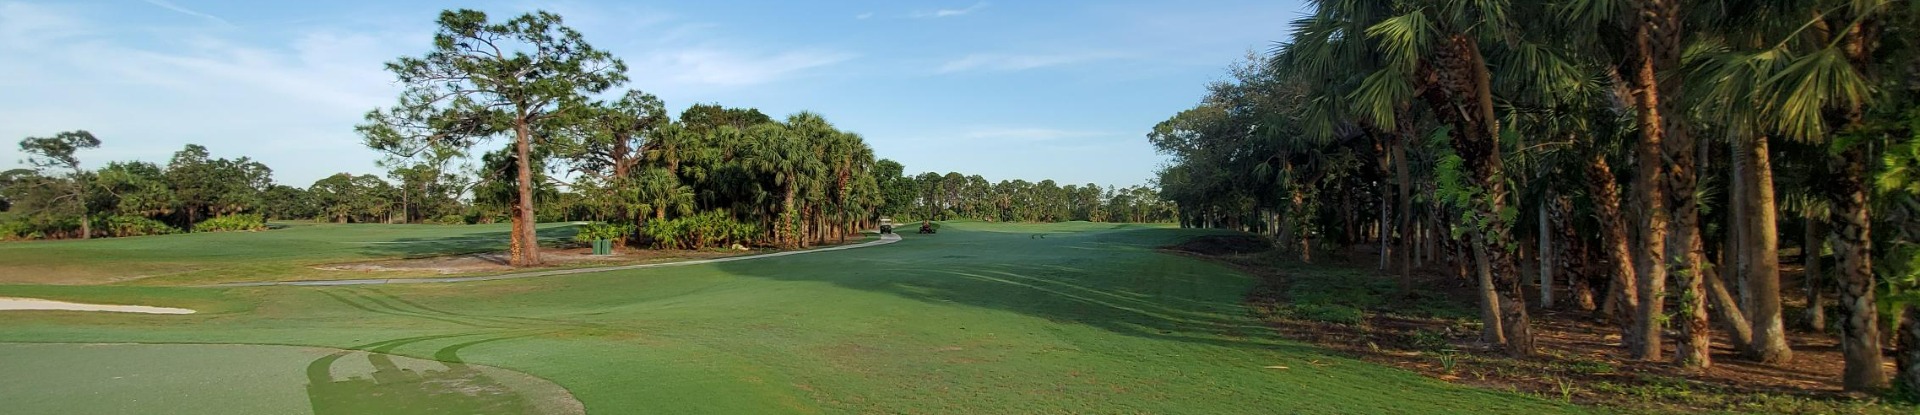 Interior Header - golf course green